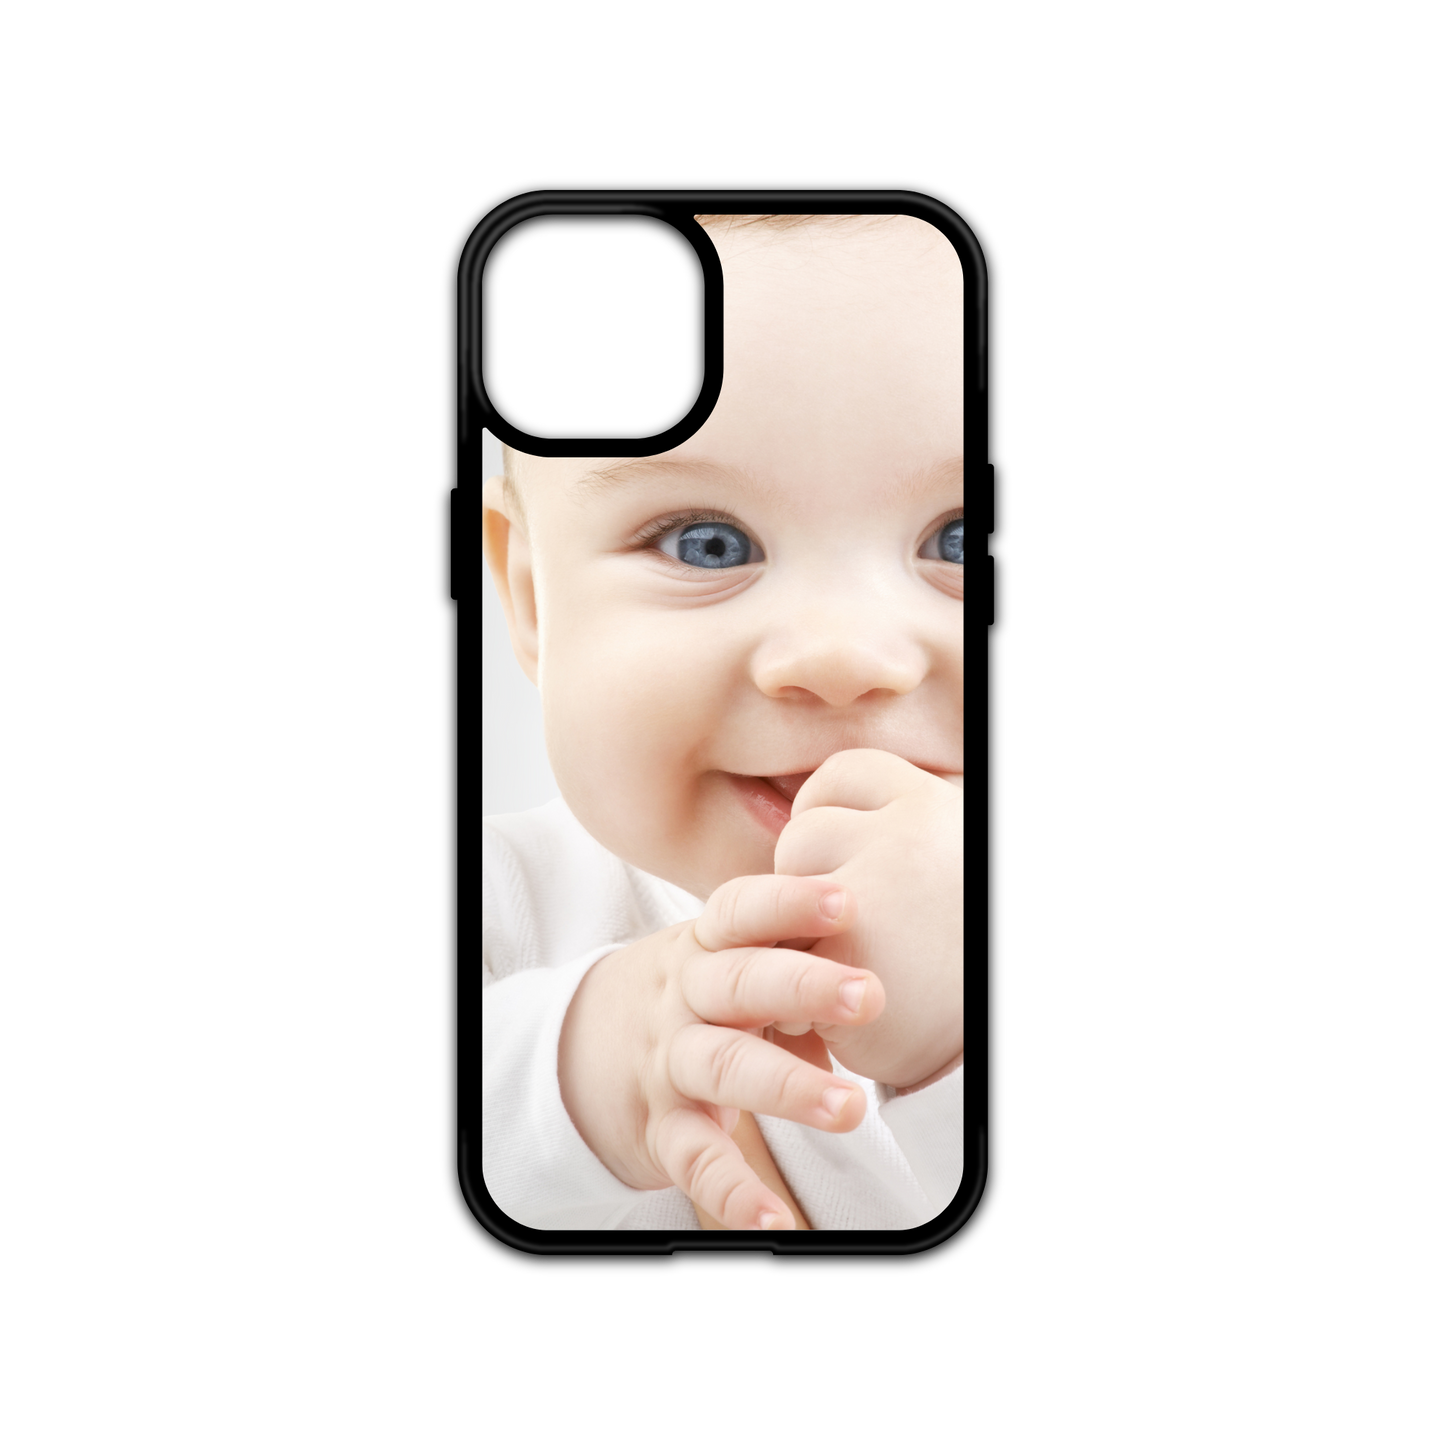 Custom iPhone Case